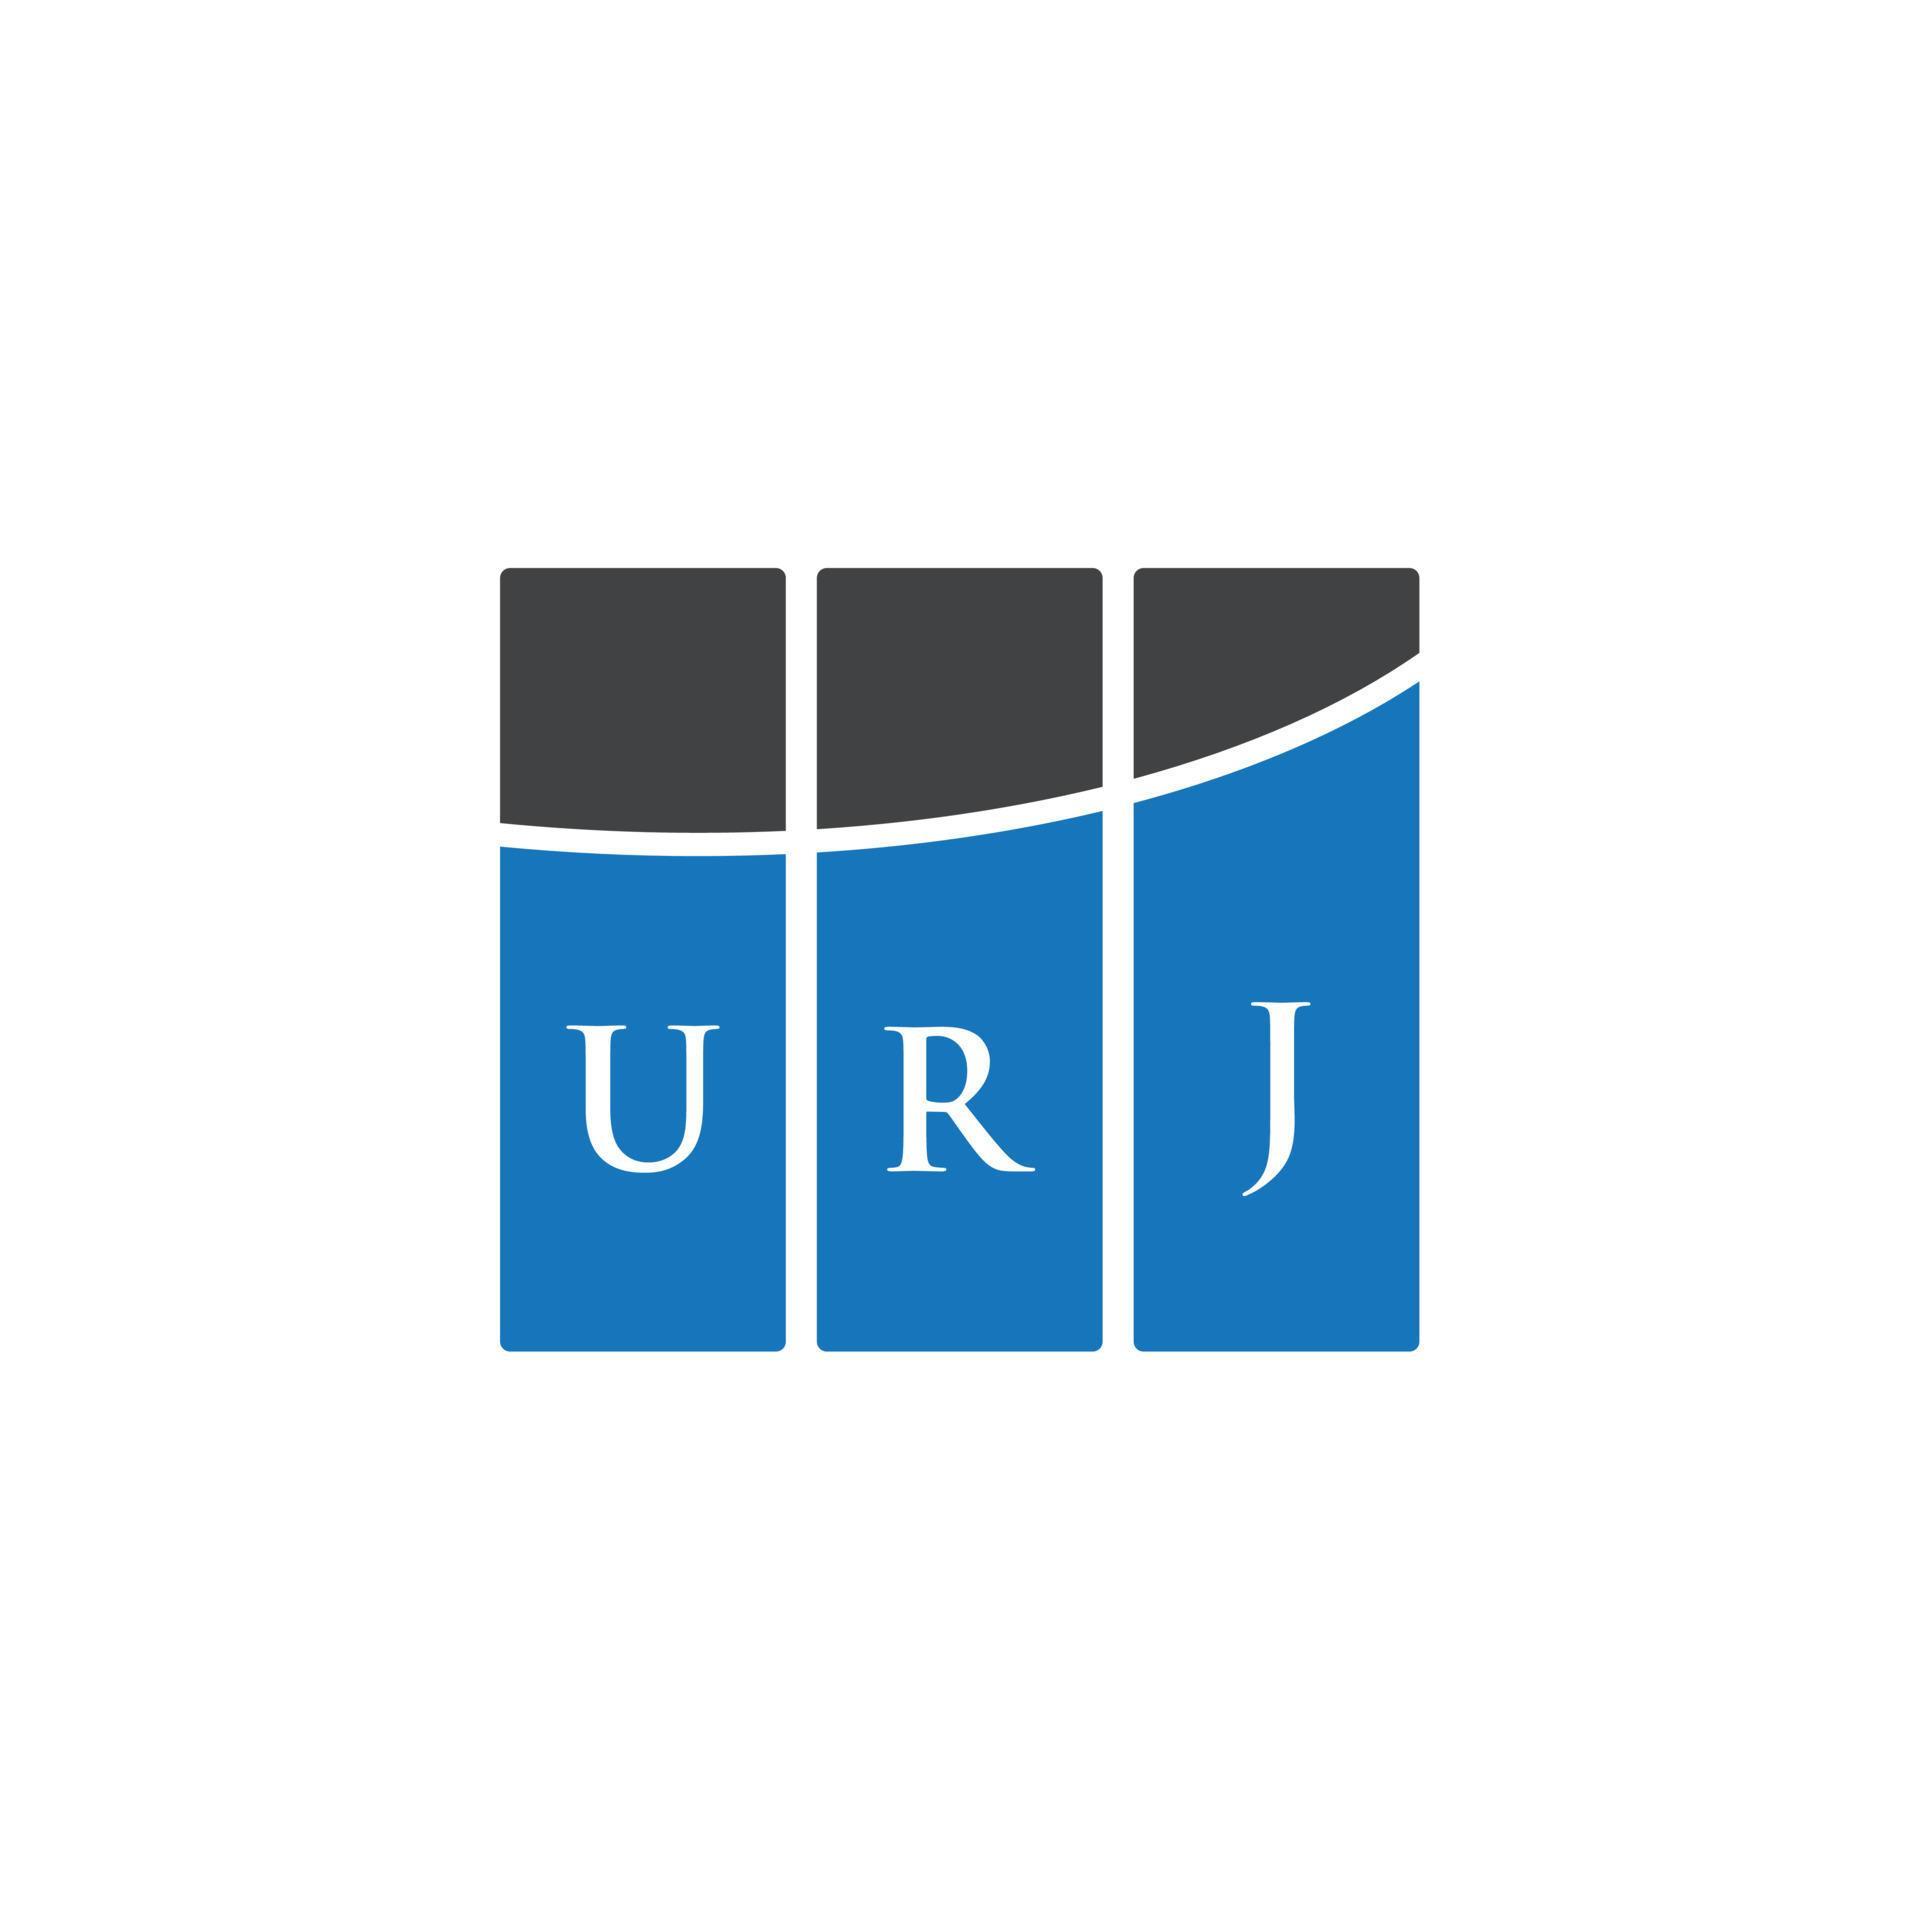 URJ letter logo design on white background. URJ creative initials .